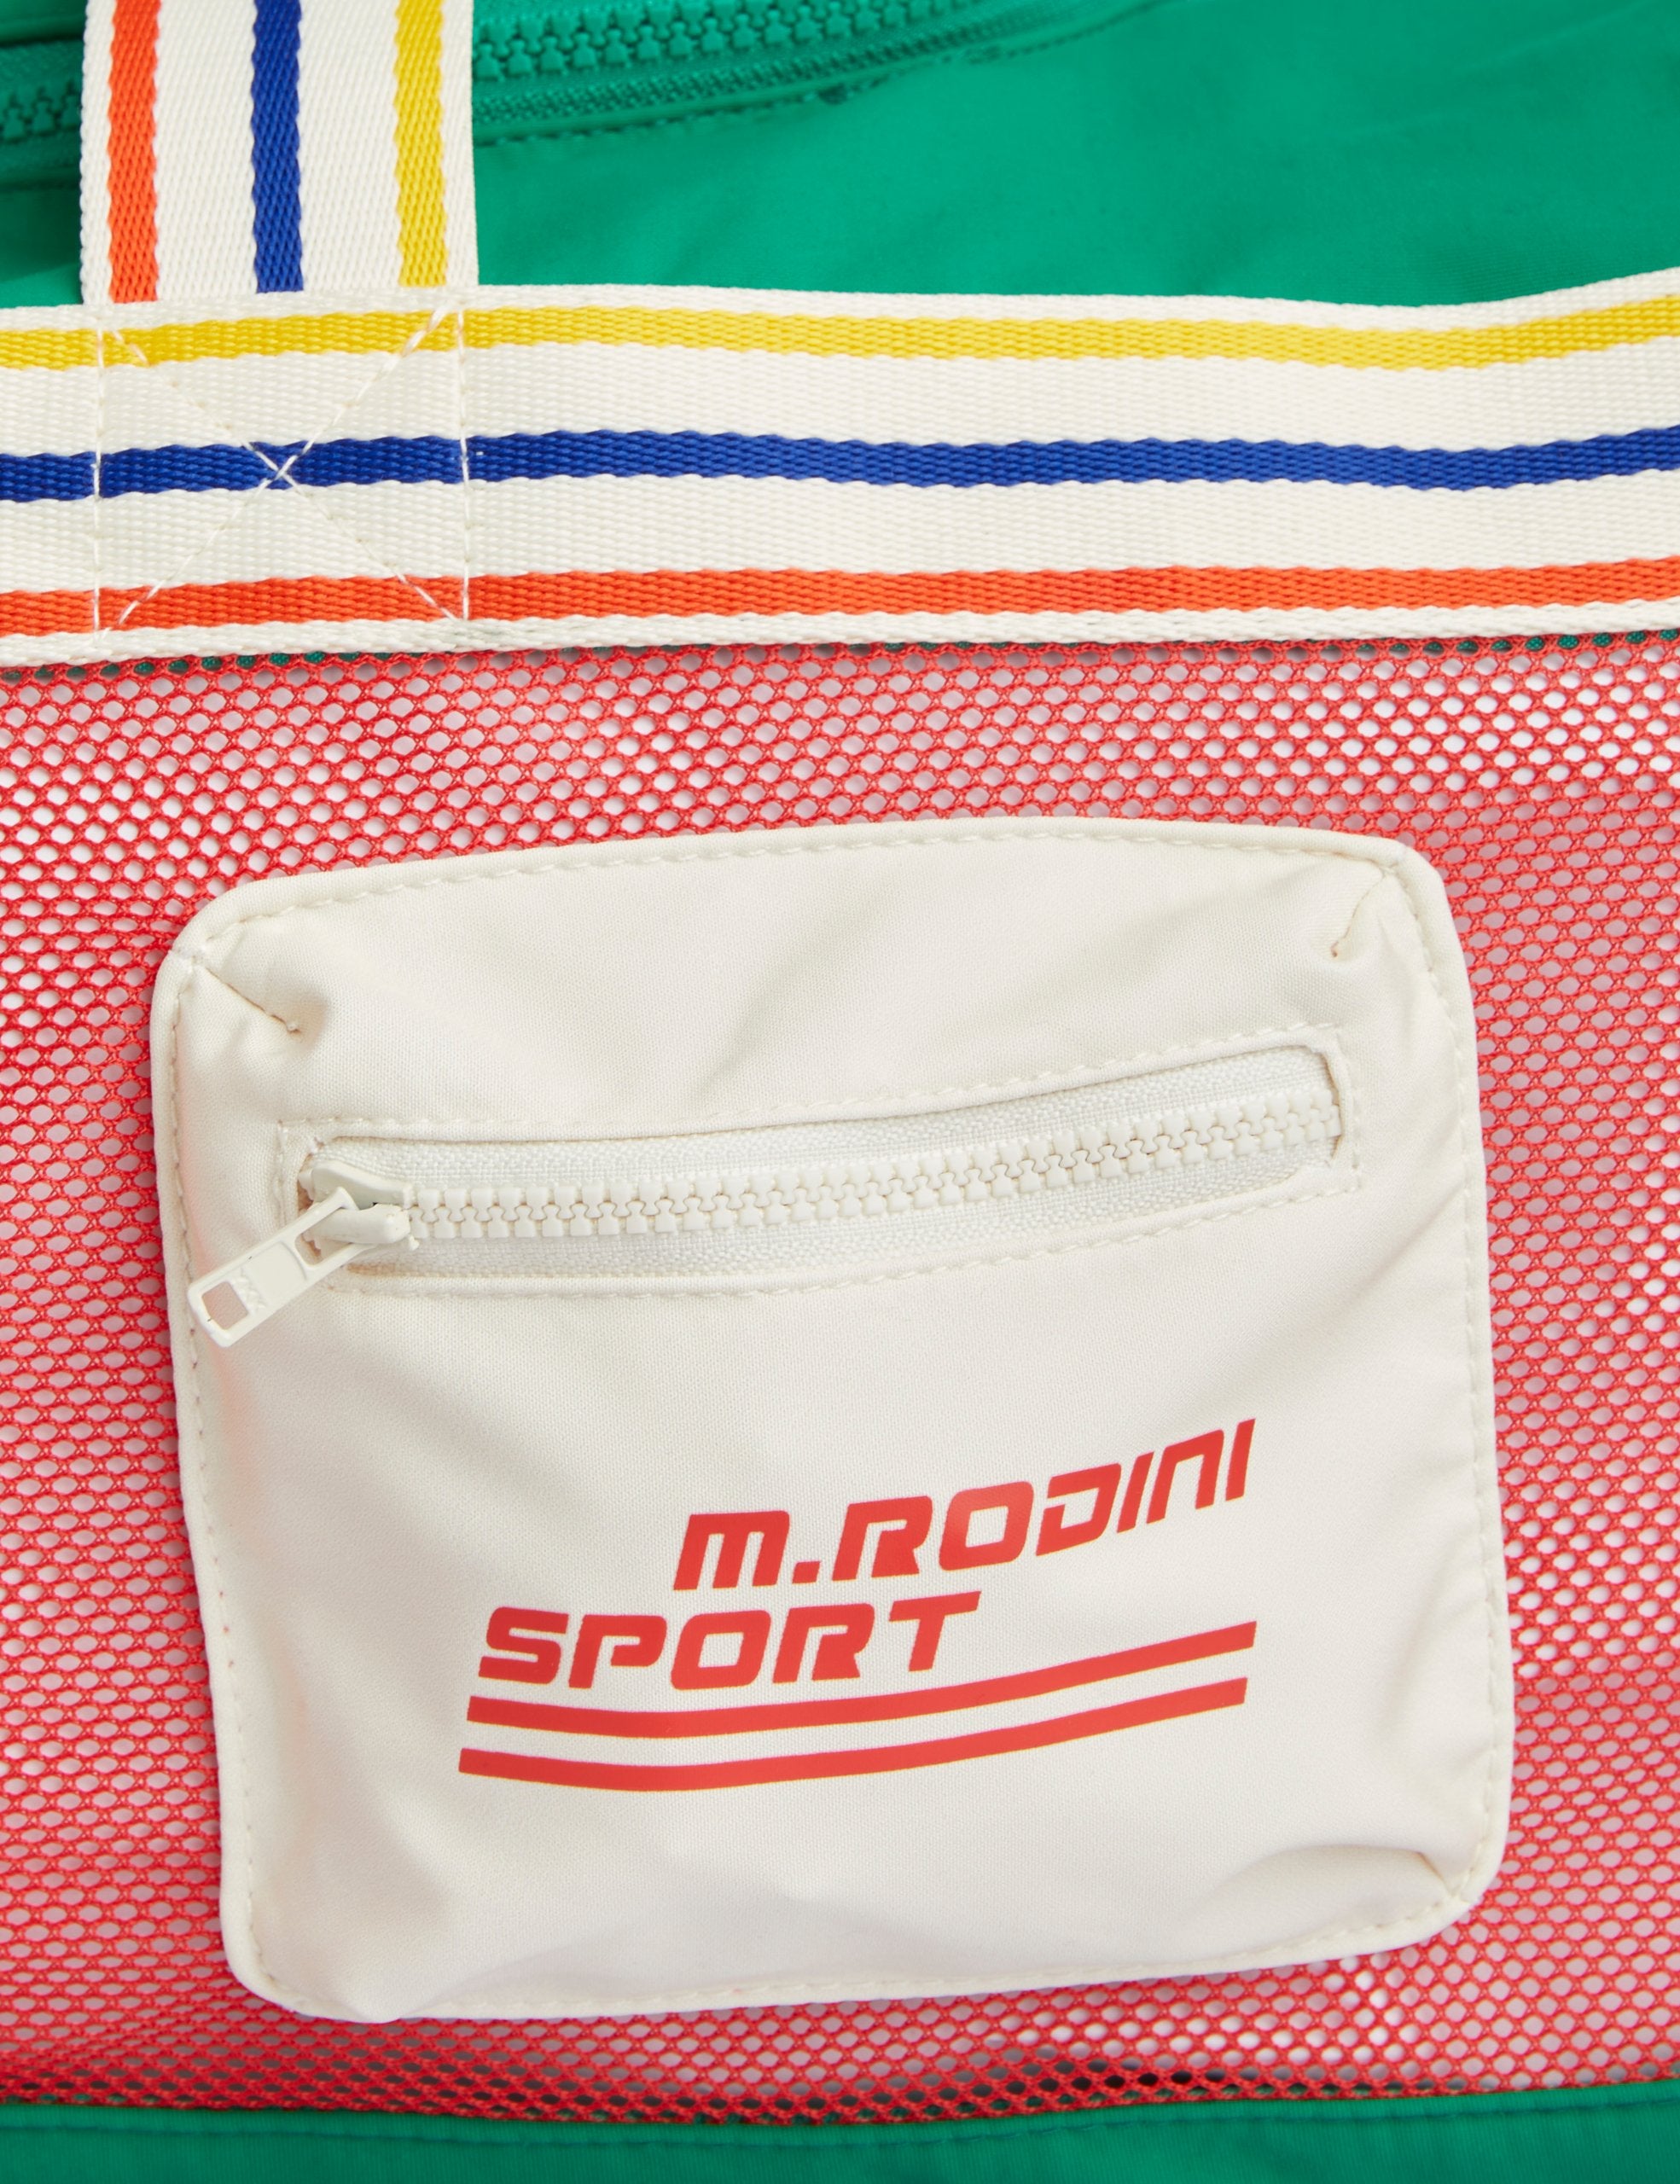 Mini Rodini | M.rodini sp sport bag